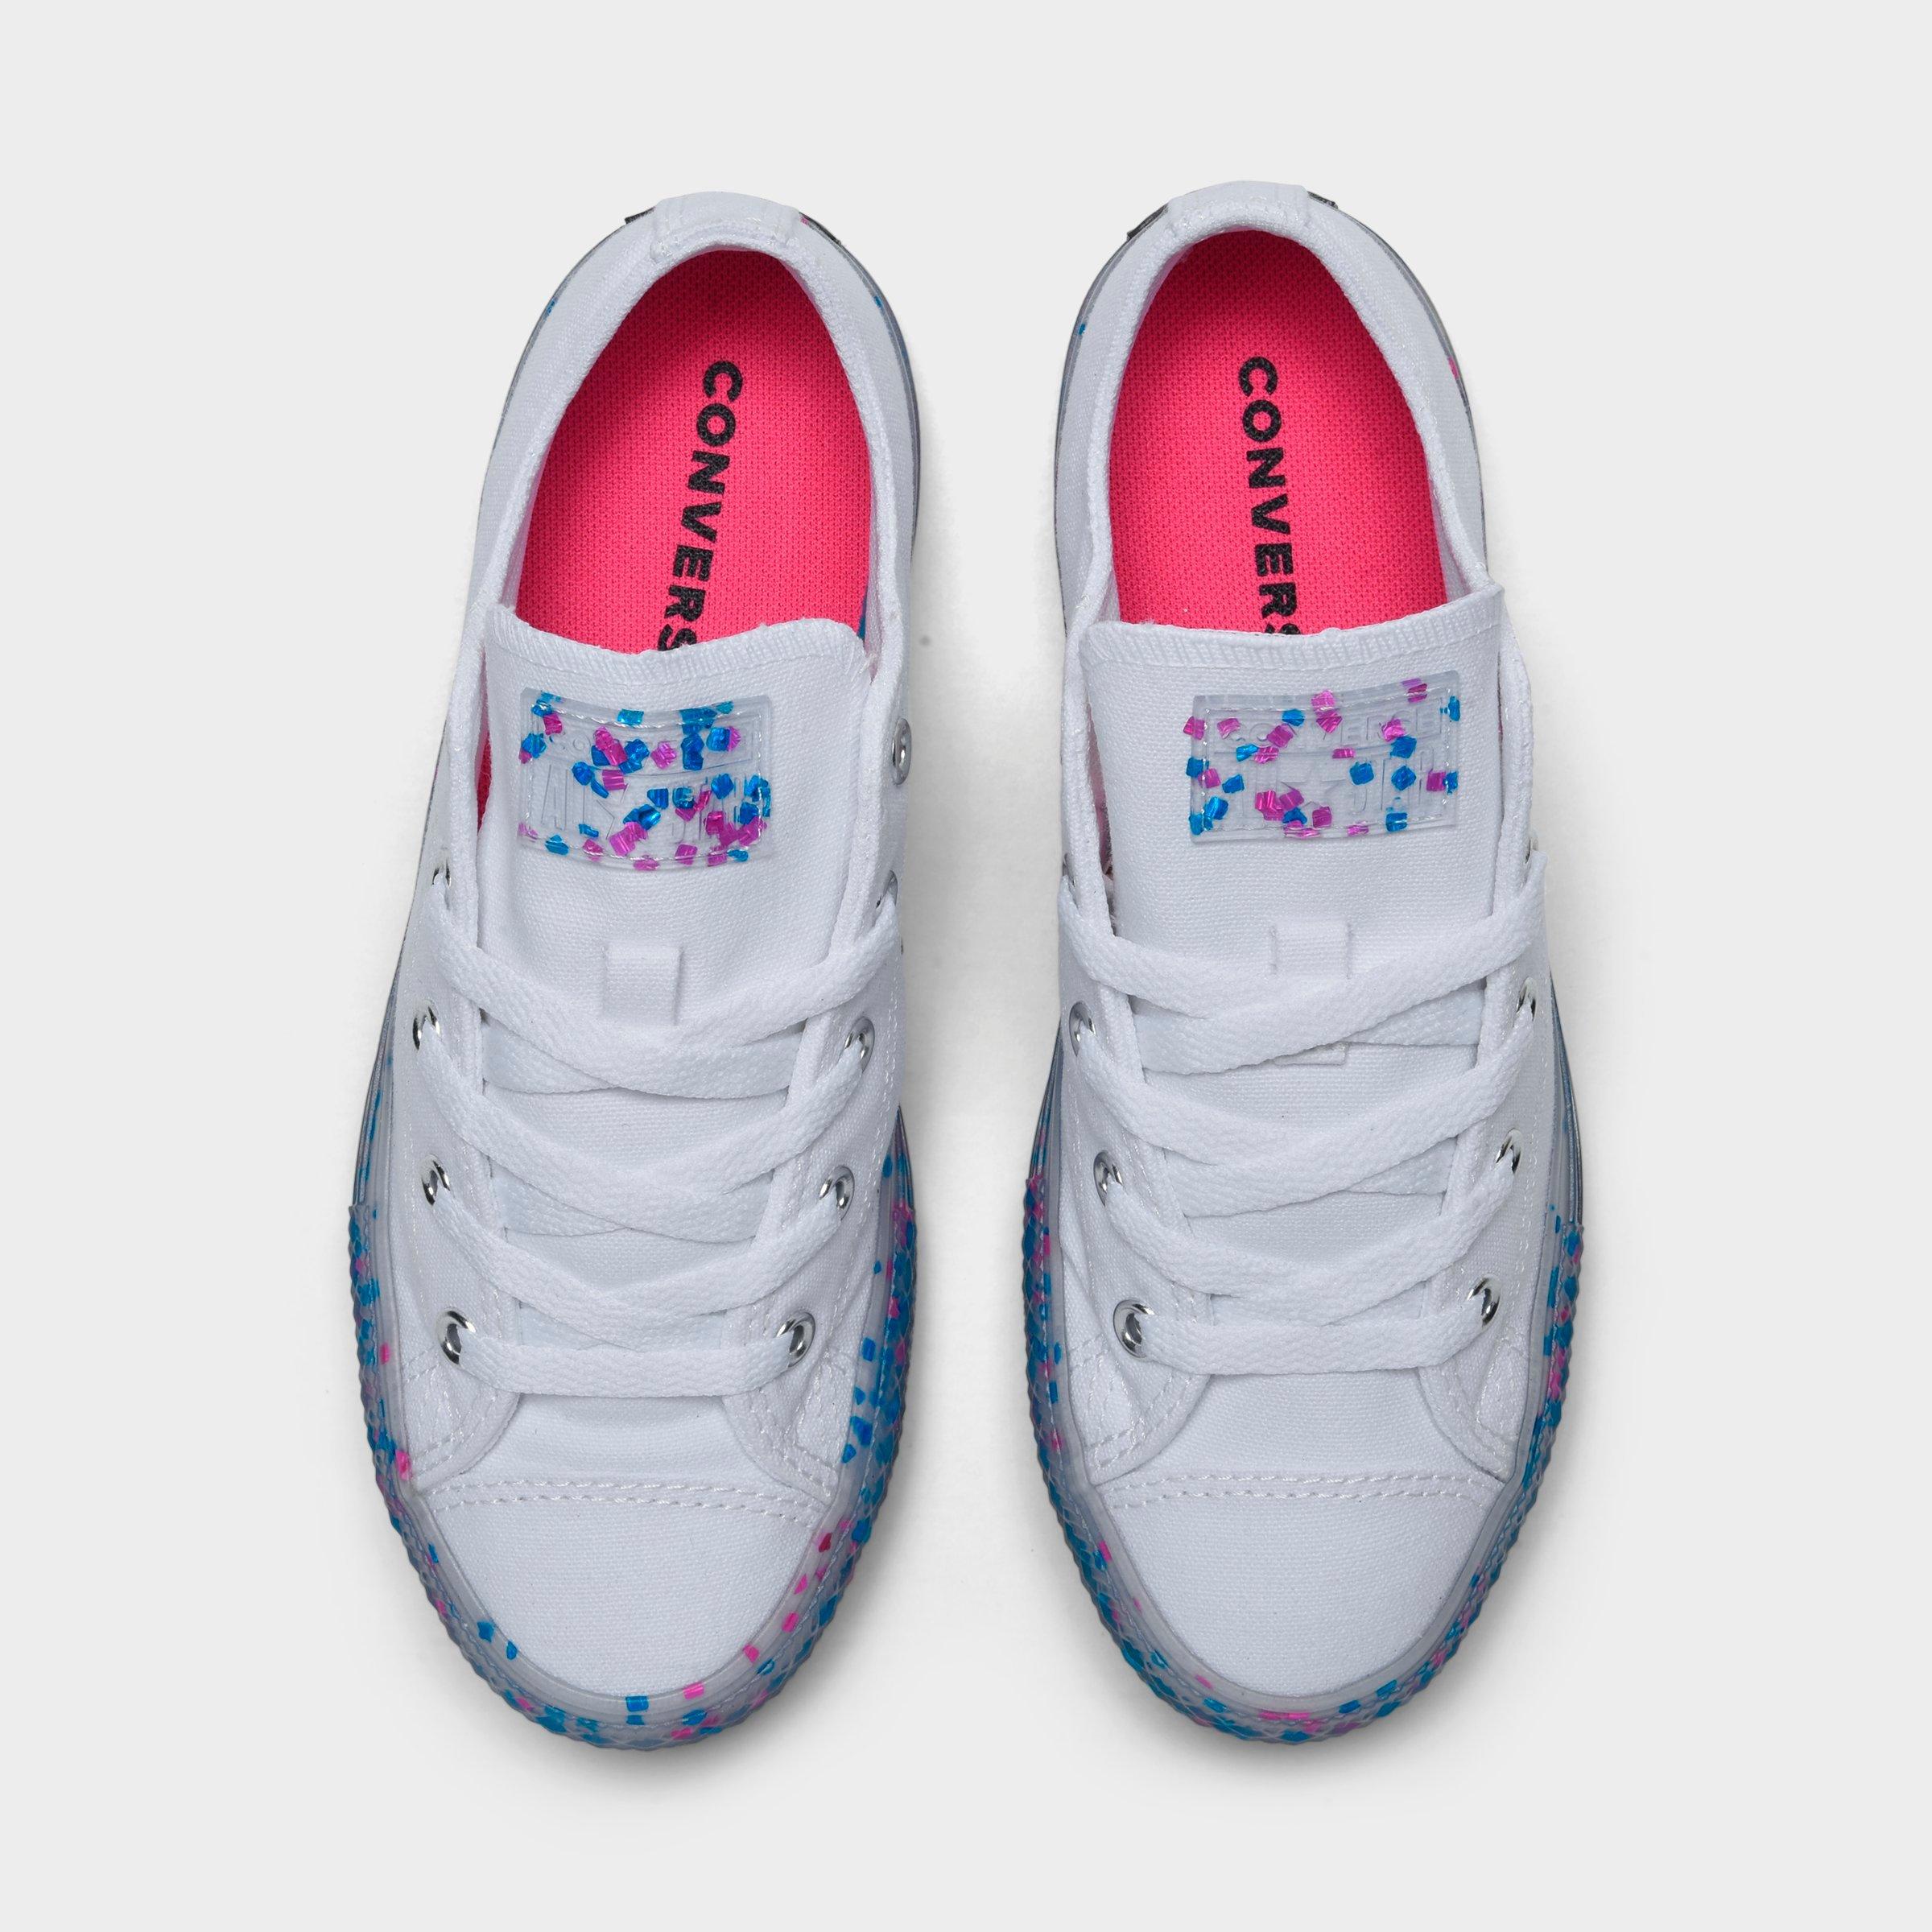 converse confetti shoes